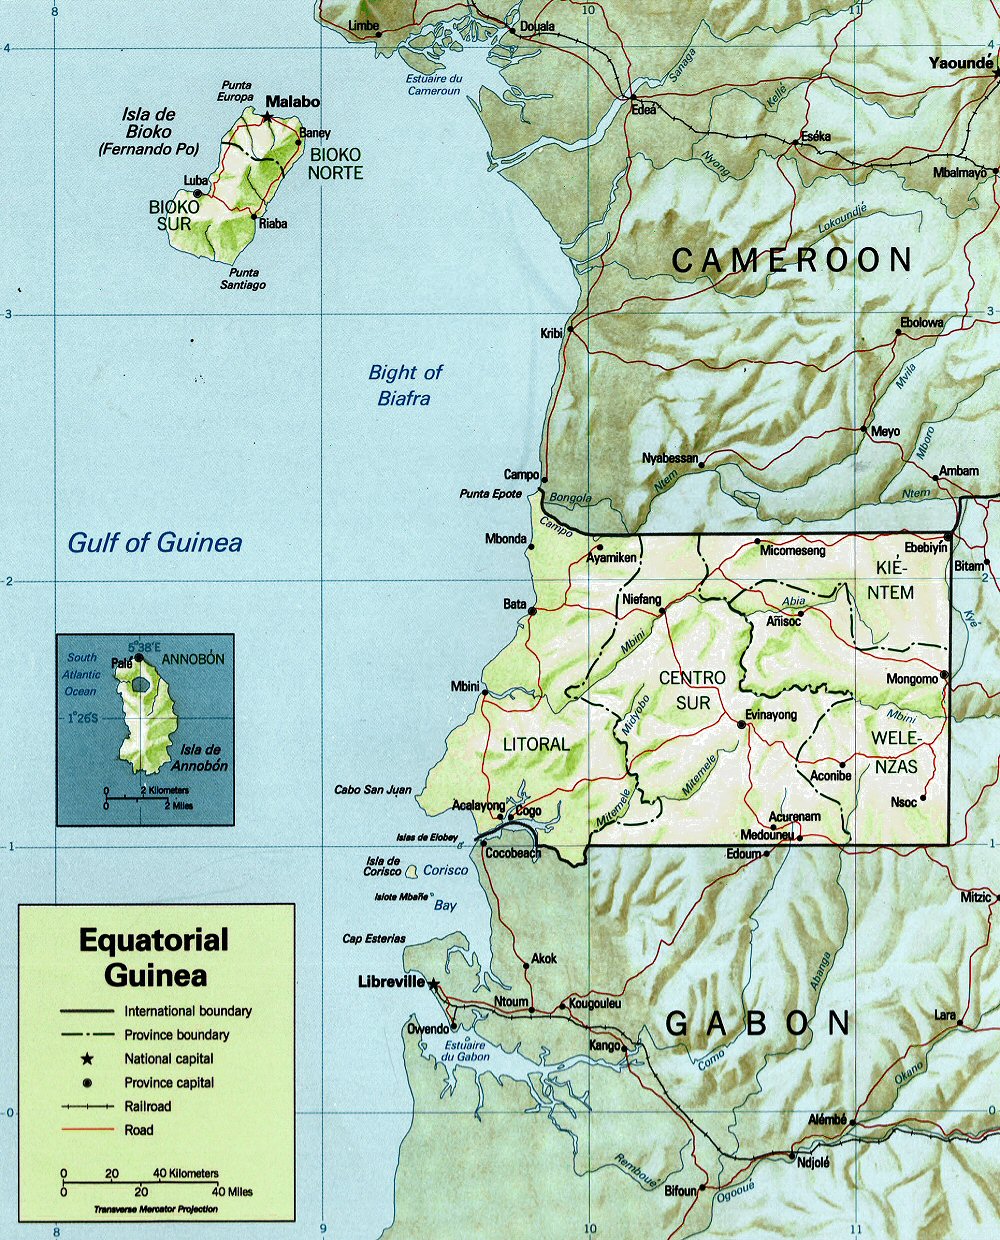 Carte topographique de la Guinée Equatoriale.